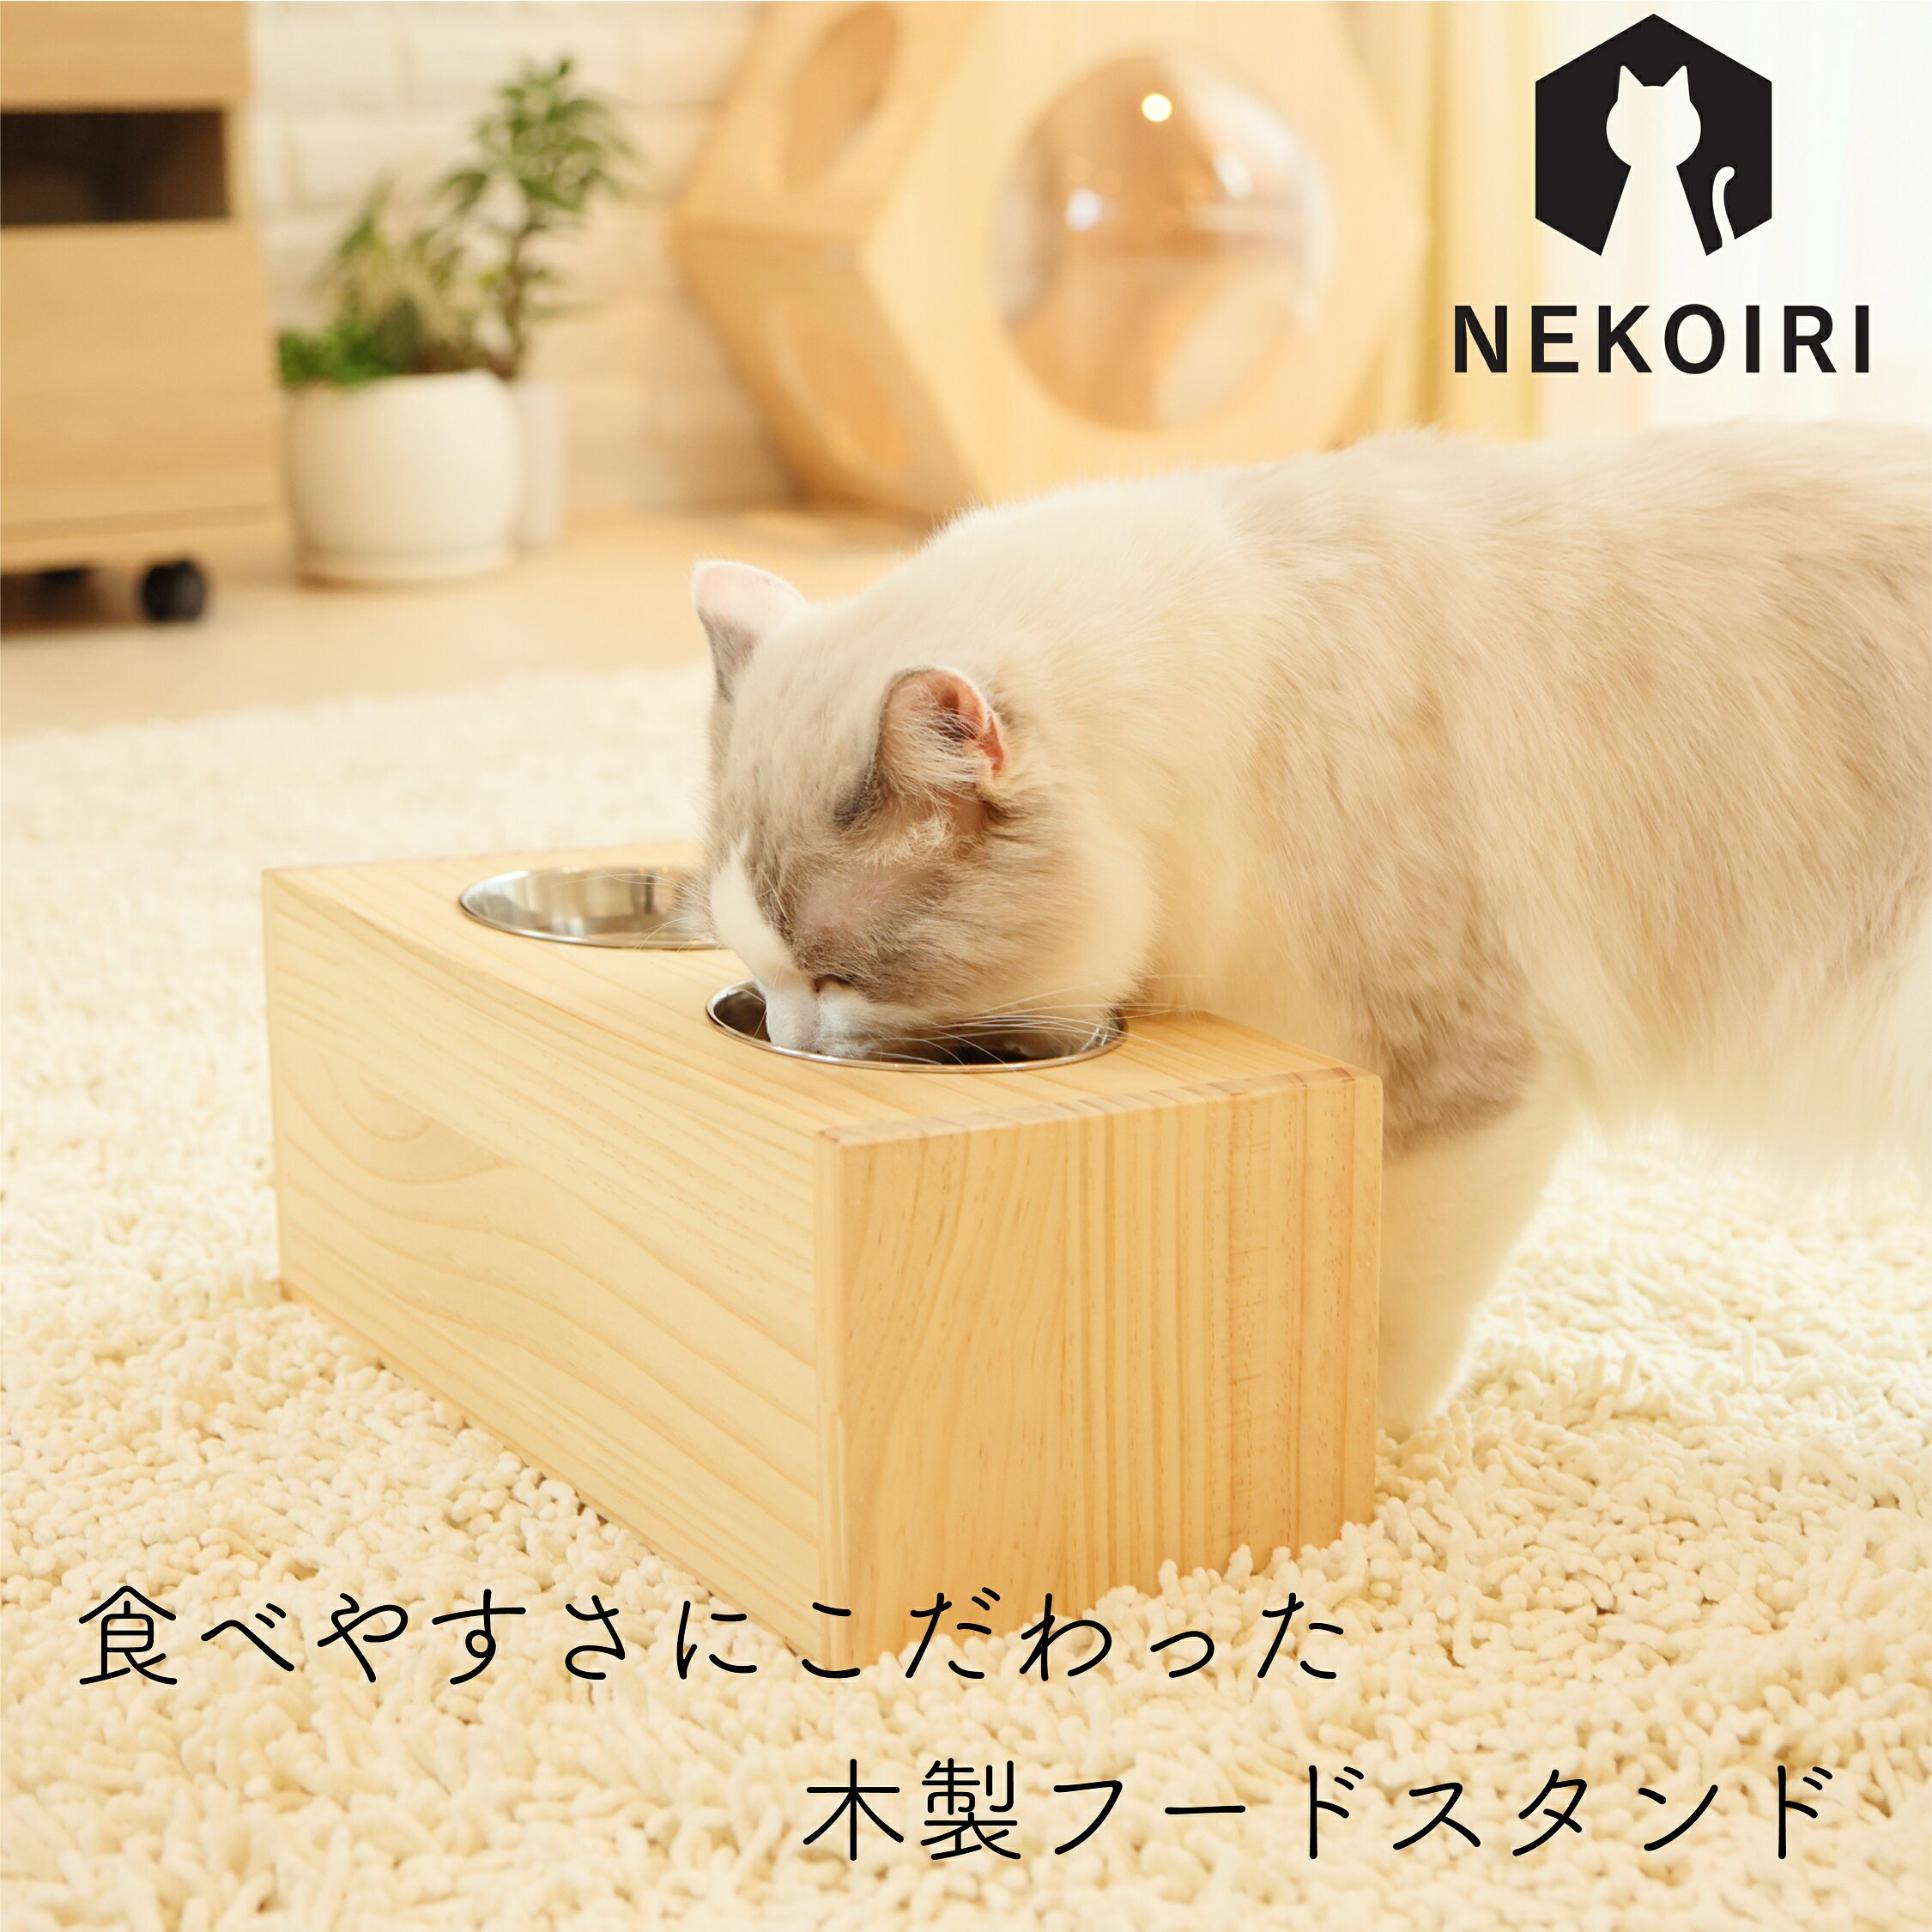 フードスタンド NEKOIRI 木製 ステンレス ネコ用 フードボウル 食器スタンド 食器台 給水器 エサ皿 ご飯台 給餌 職人手仕上げ インテリア おしゃれ かわいい ペット用品 猫用品